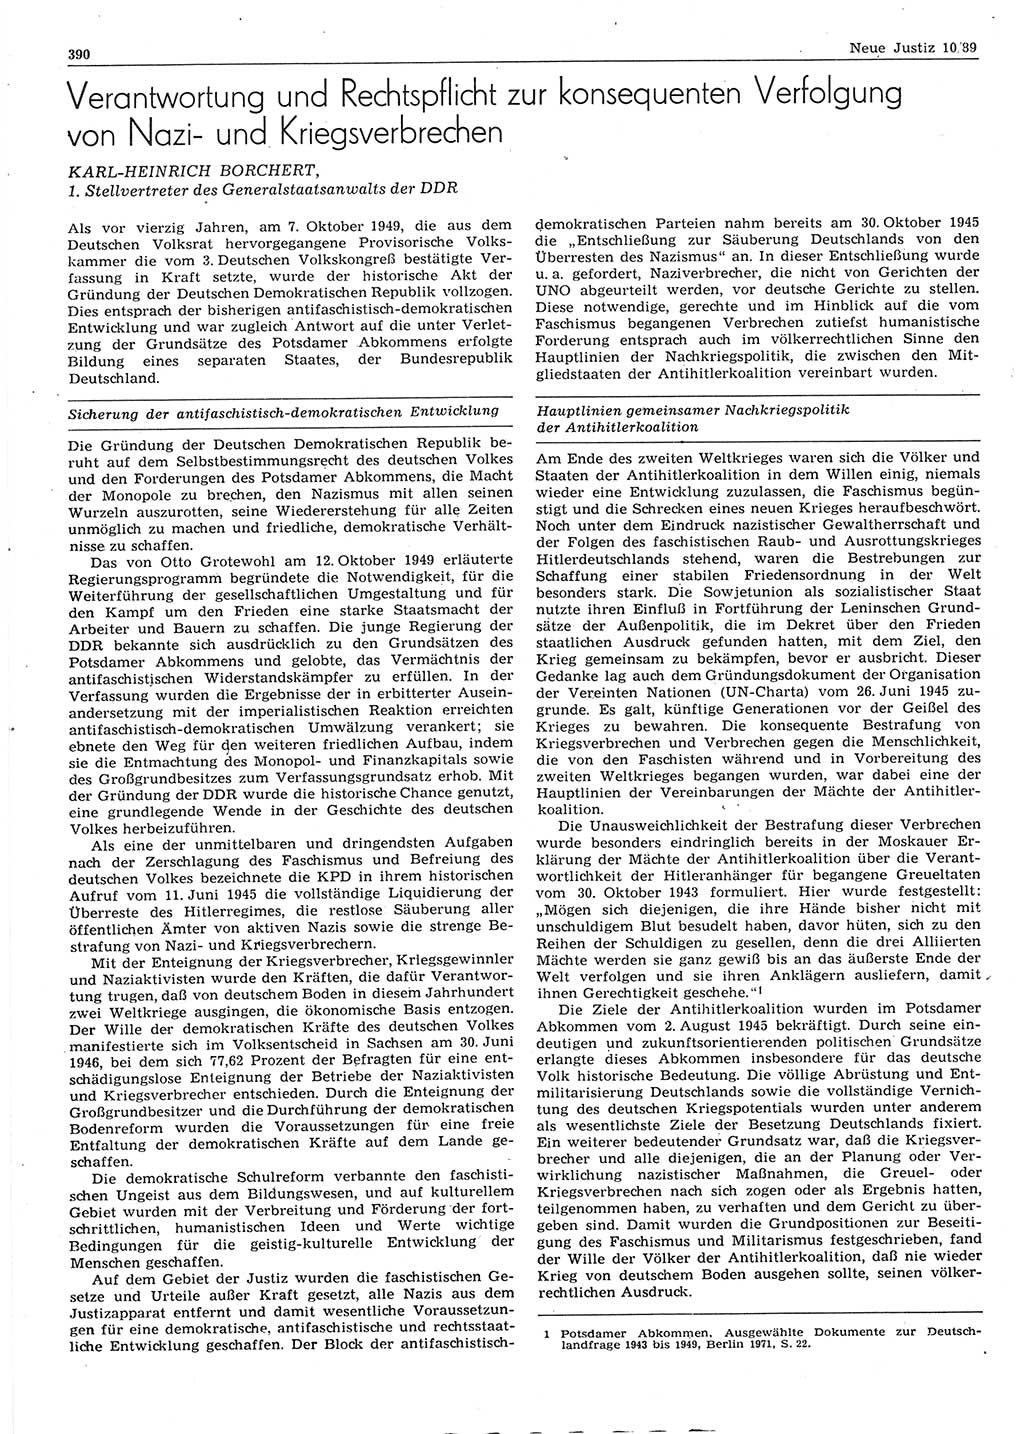 Neue Justiz (NJ), Zeitschrift für sozialistisches Recht und Gesetzlichkeit [Deutsche Demokratische Republik (DDR)], 43. Jahrgang 1989, Seite 390 (NJ DDR 1989, S. 390)